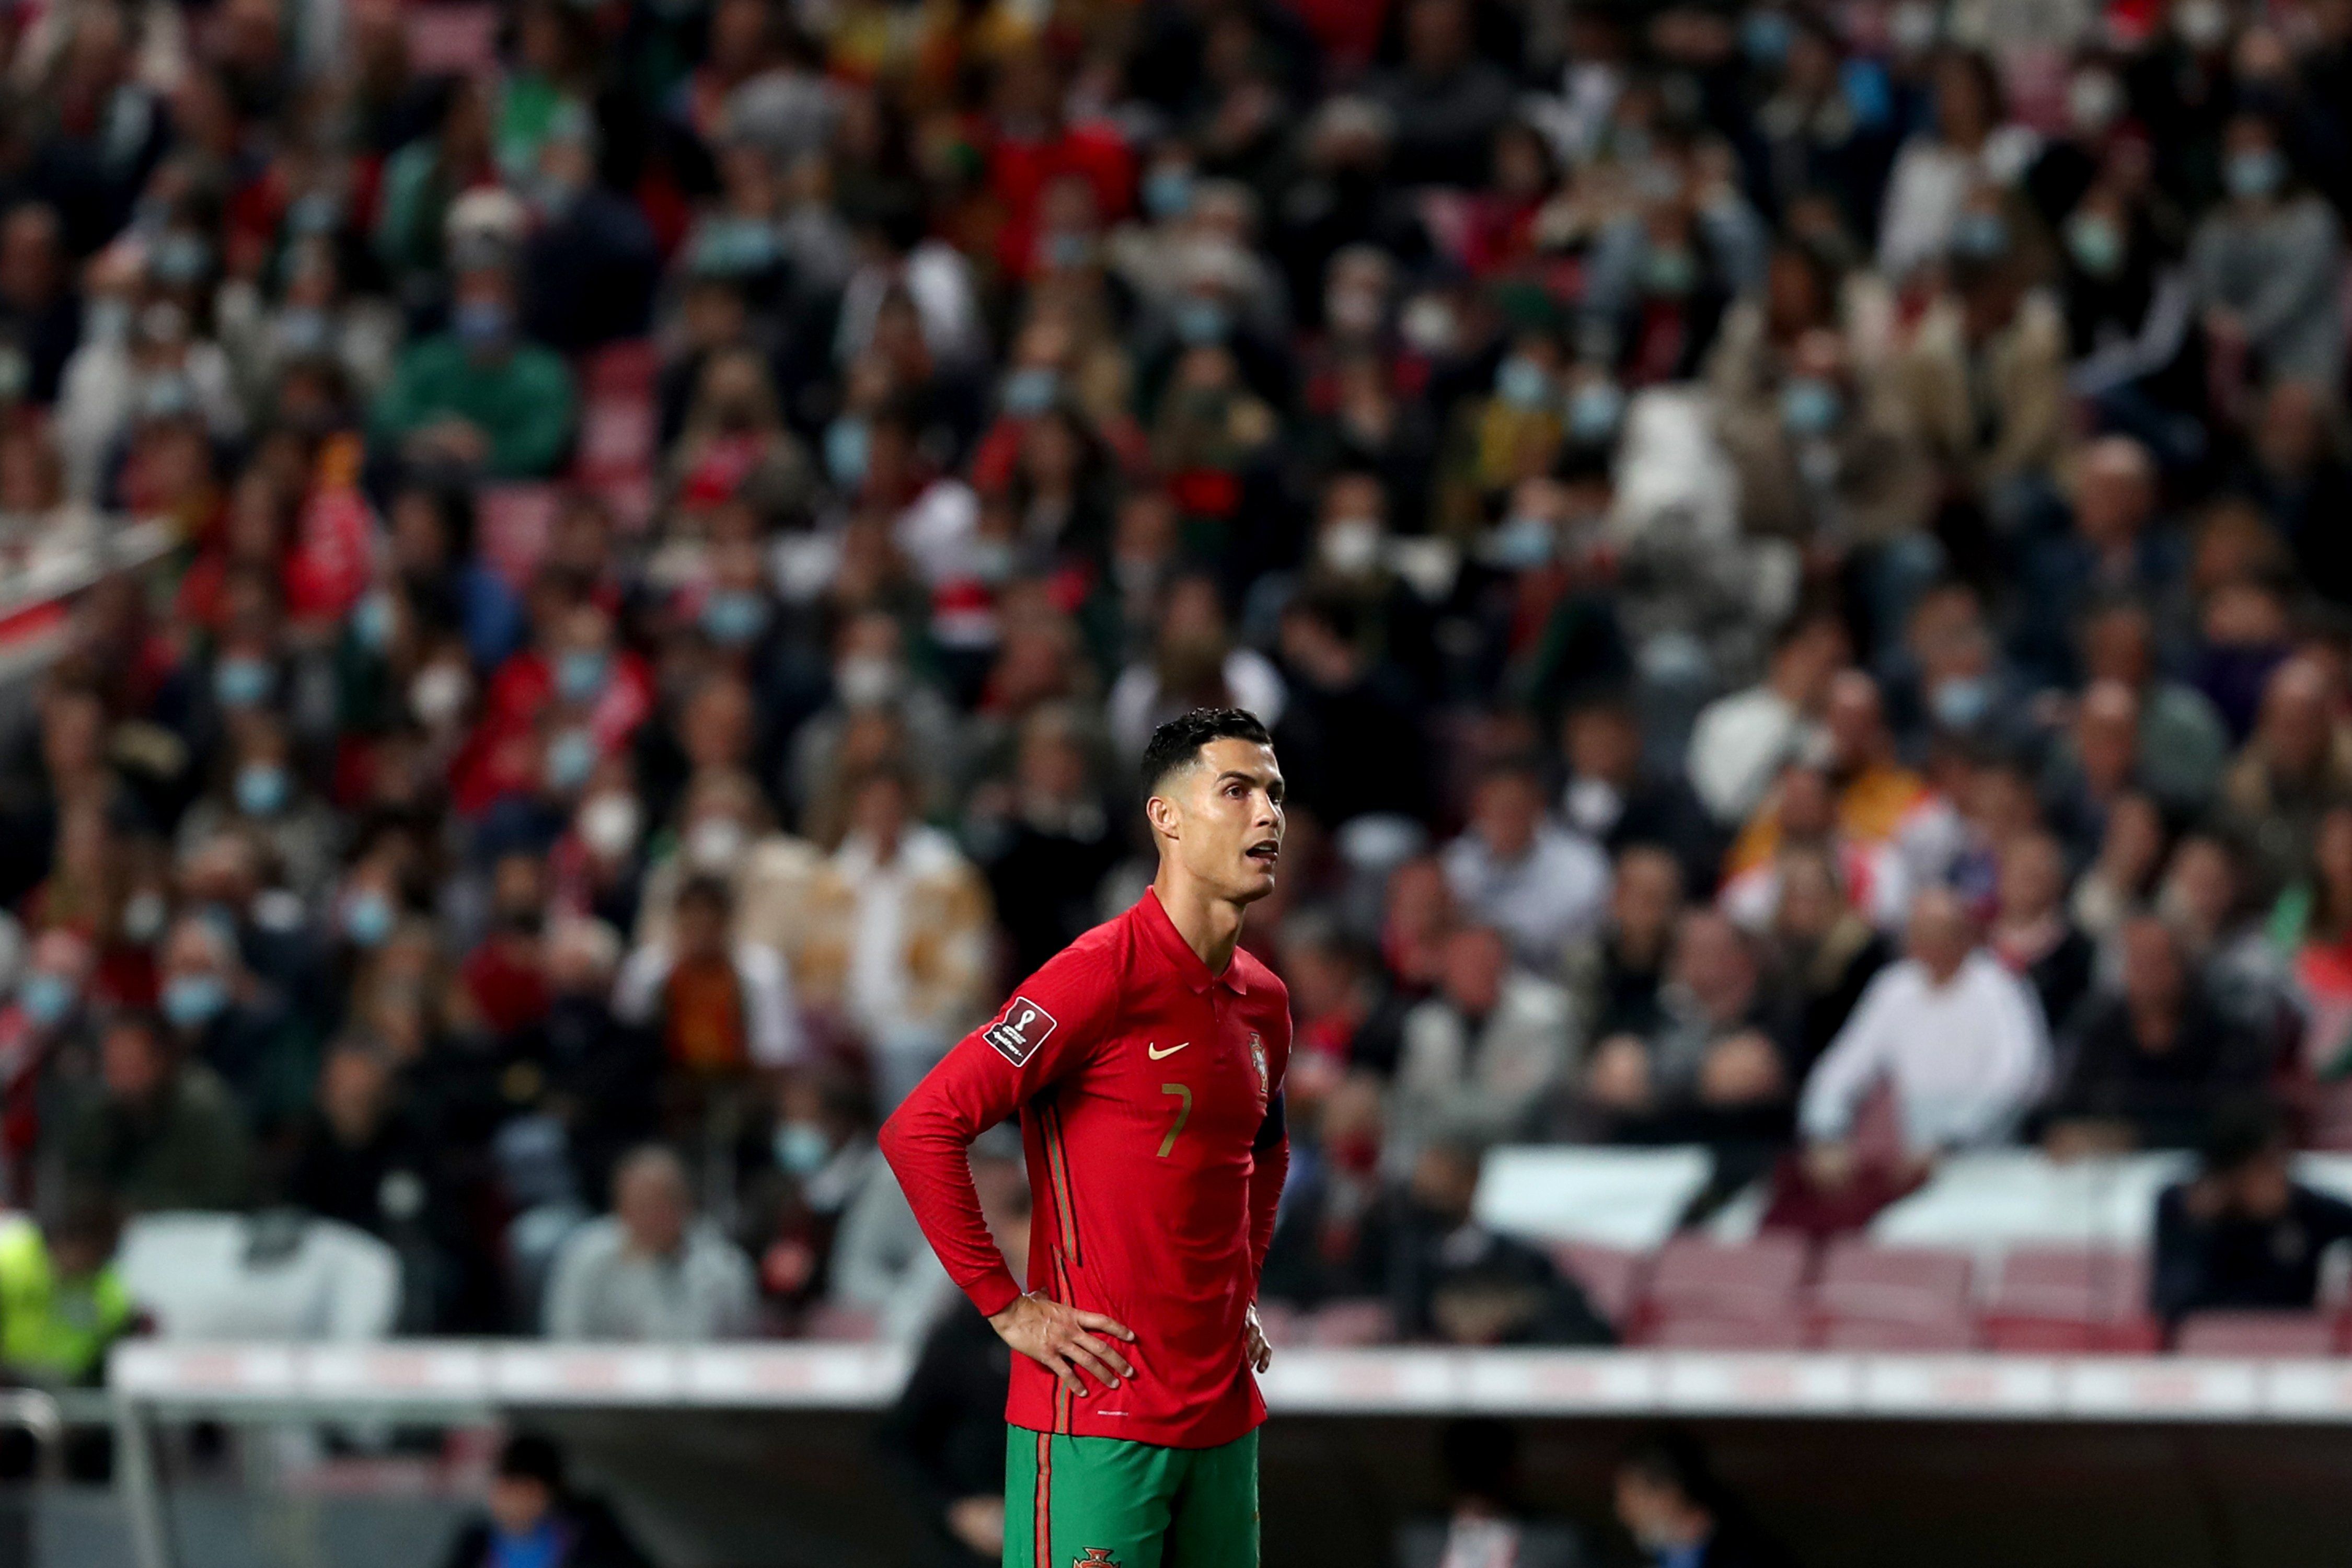 La Portugal de Cristiano Ronaldo veu perillar el Mundial de Qatar 2022 i entra en crisi: "Vergonya mundial"